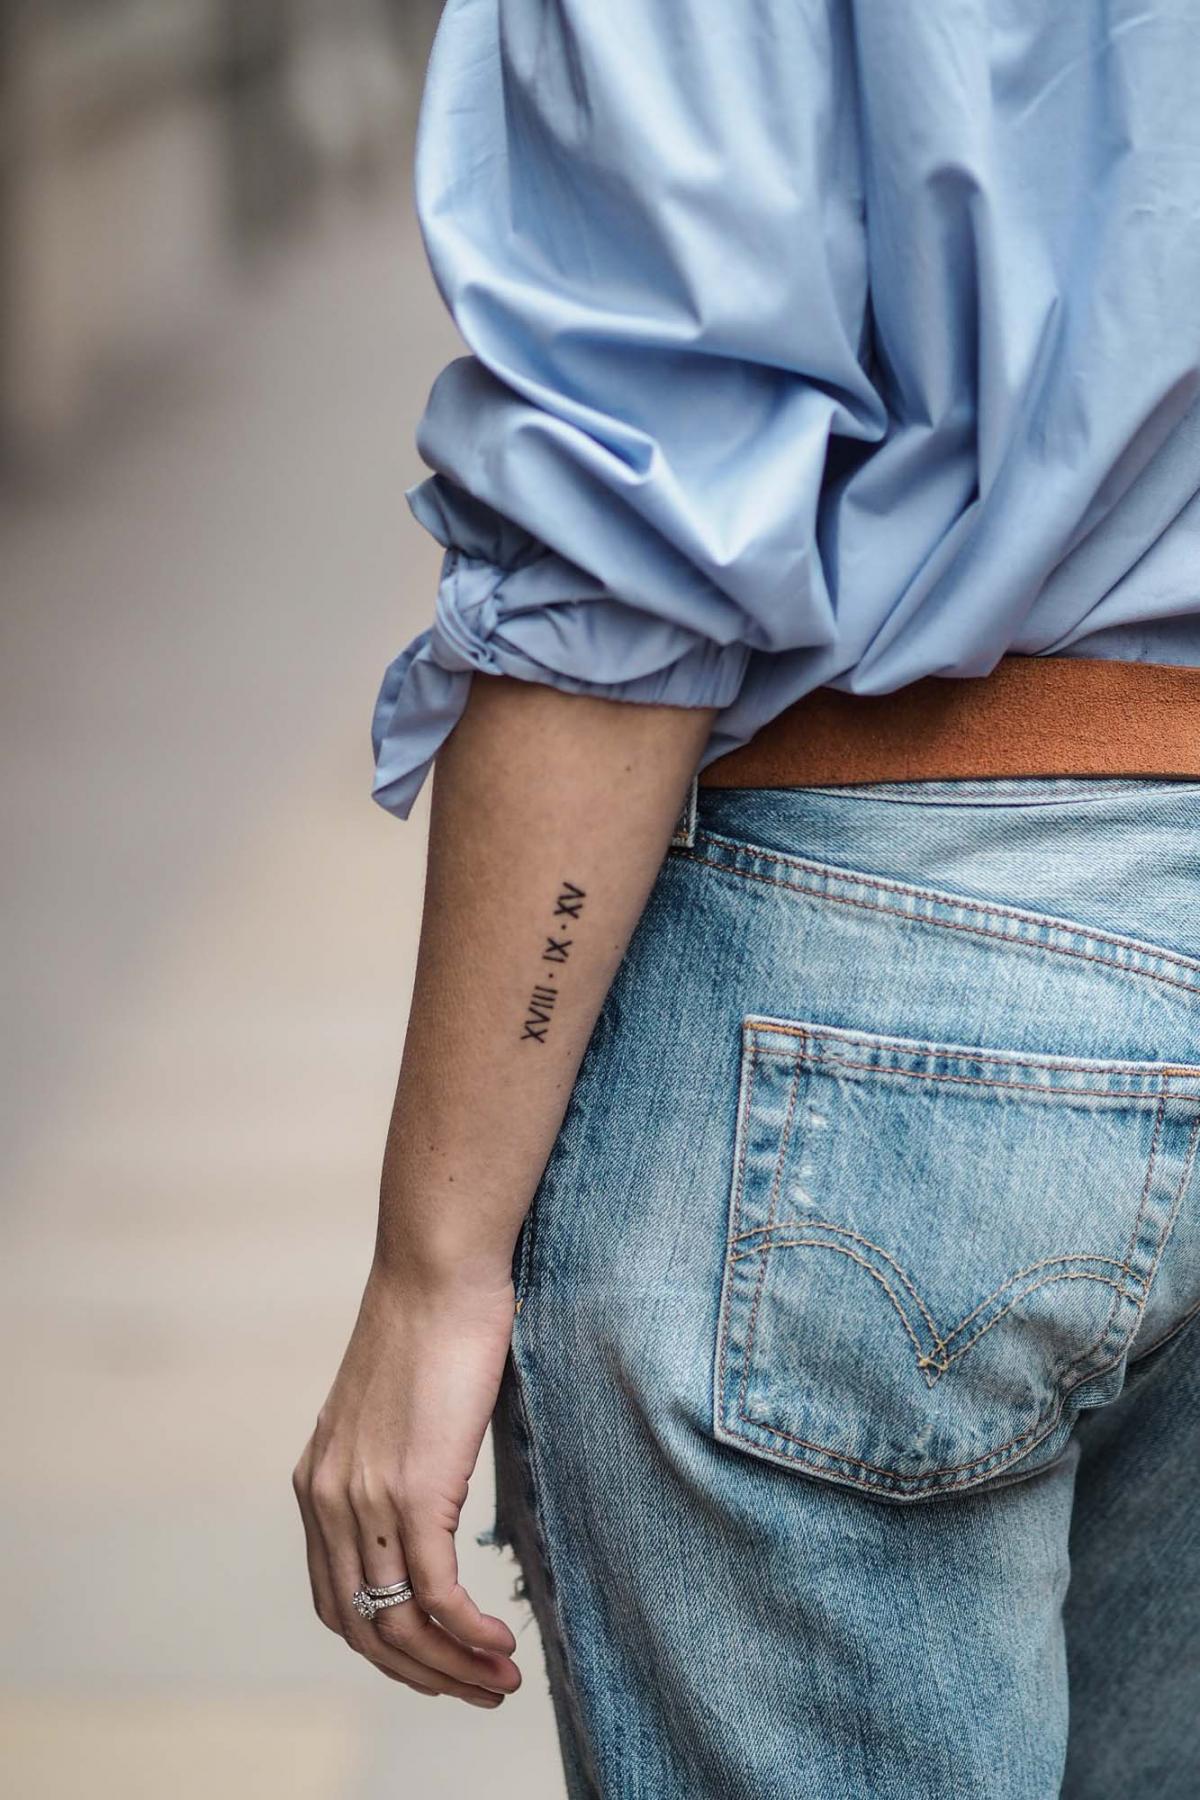 wedding date arm tattoo roman numerals